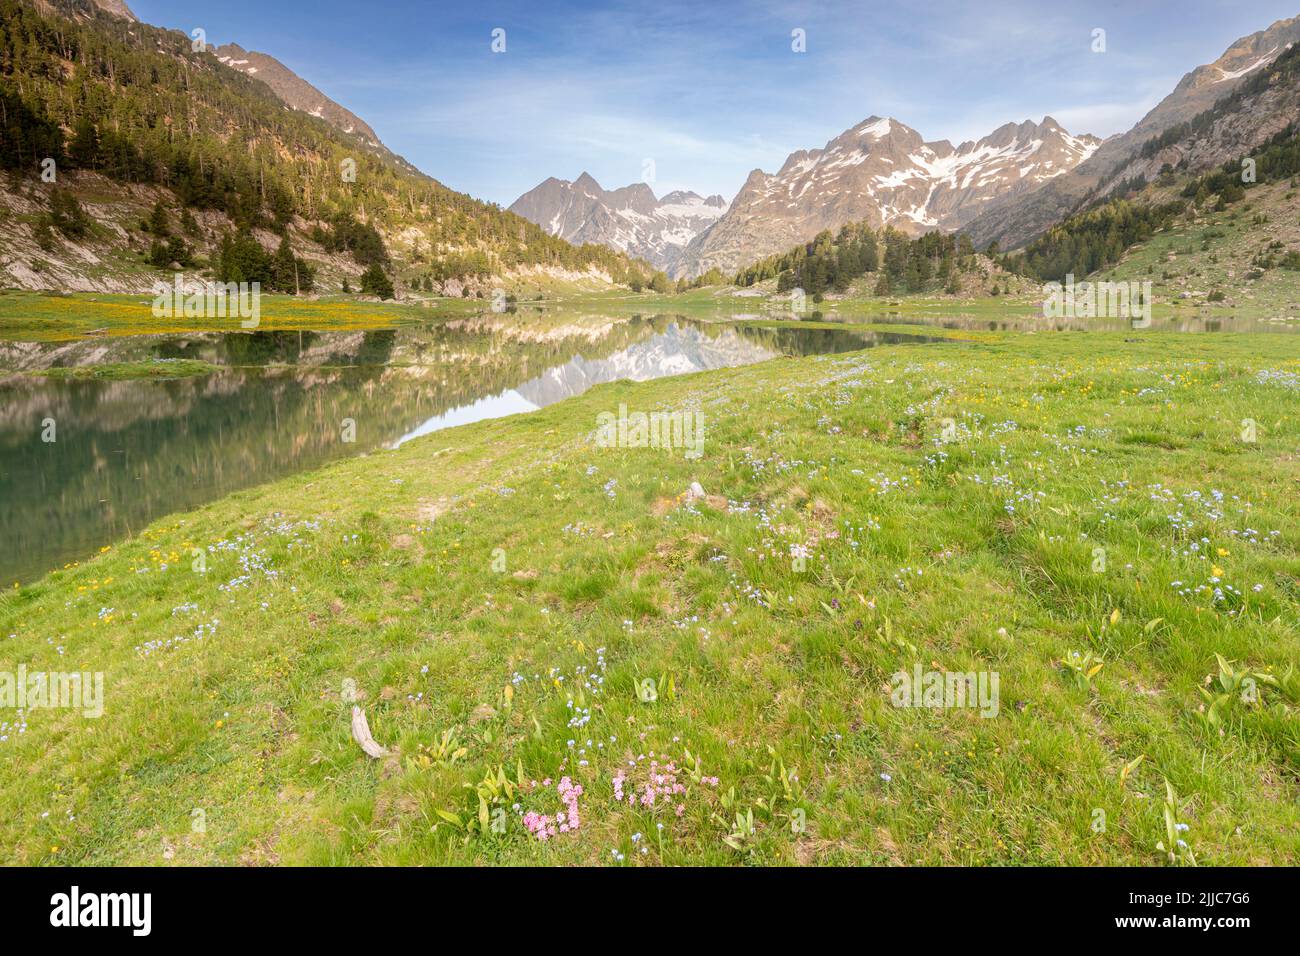 Plan d'Estan, Benasque valley, Natural Park Posets Maladeta, Huesca, Spain Stock Photo